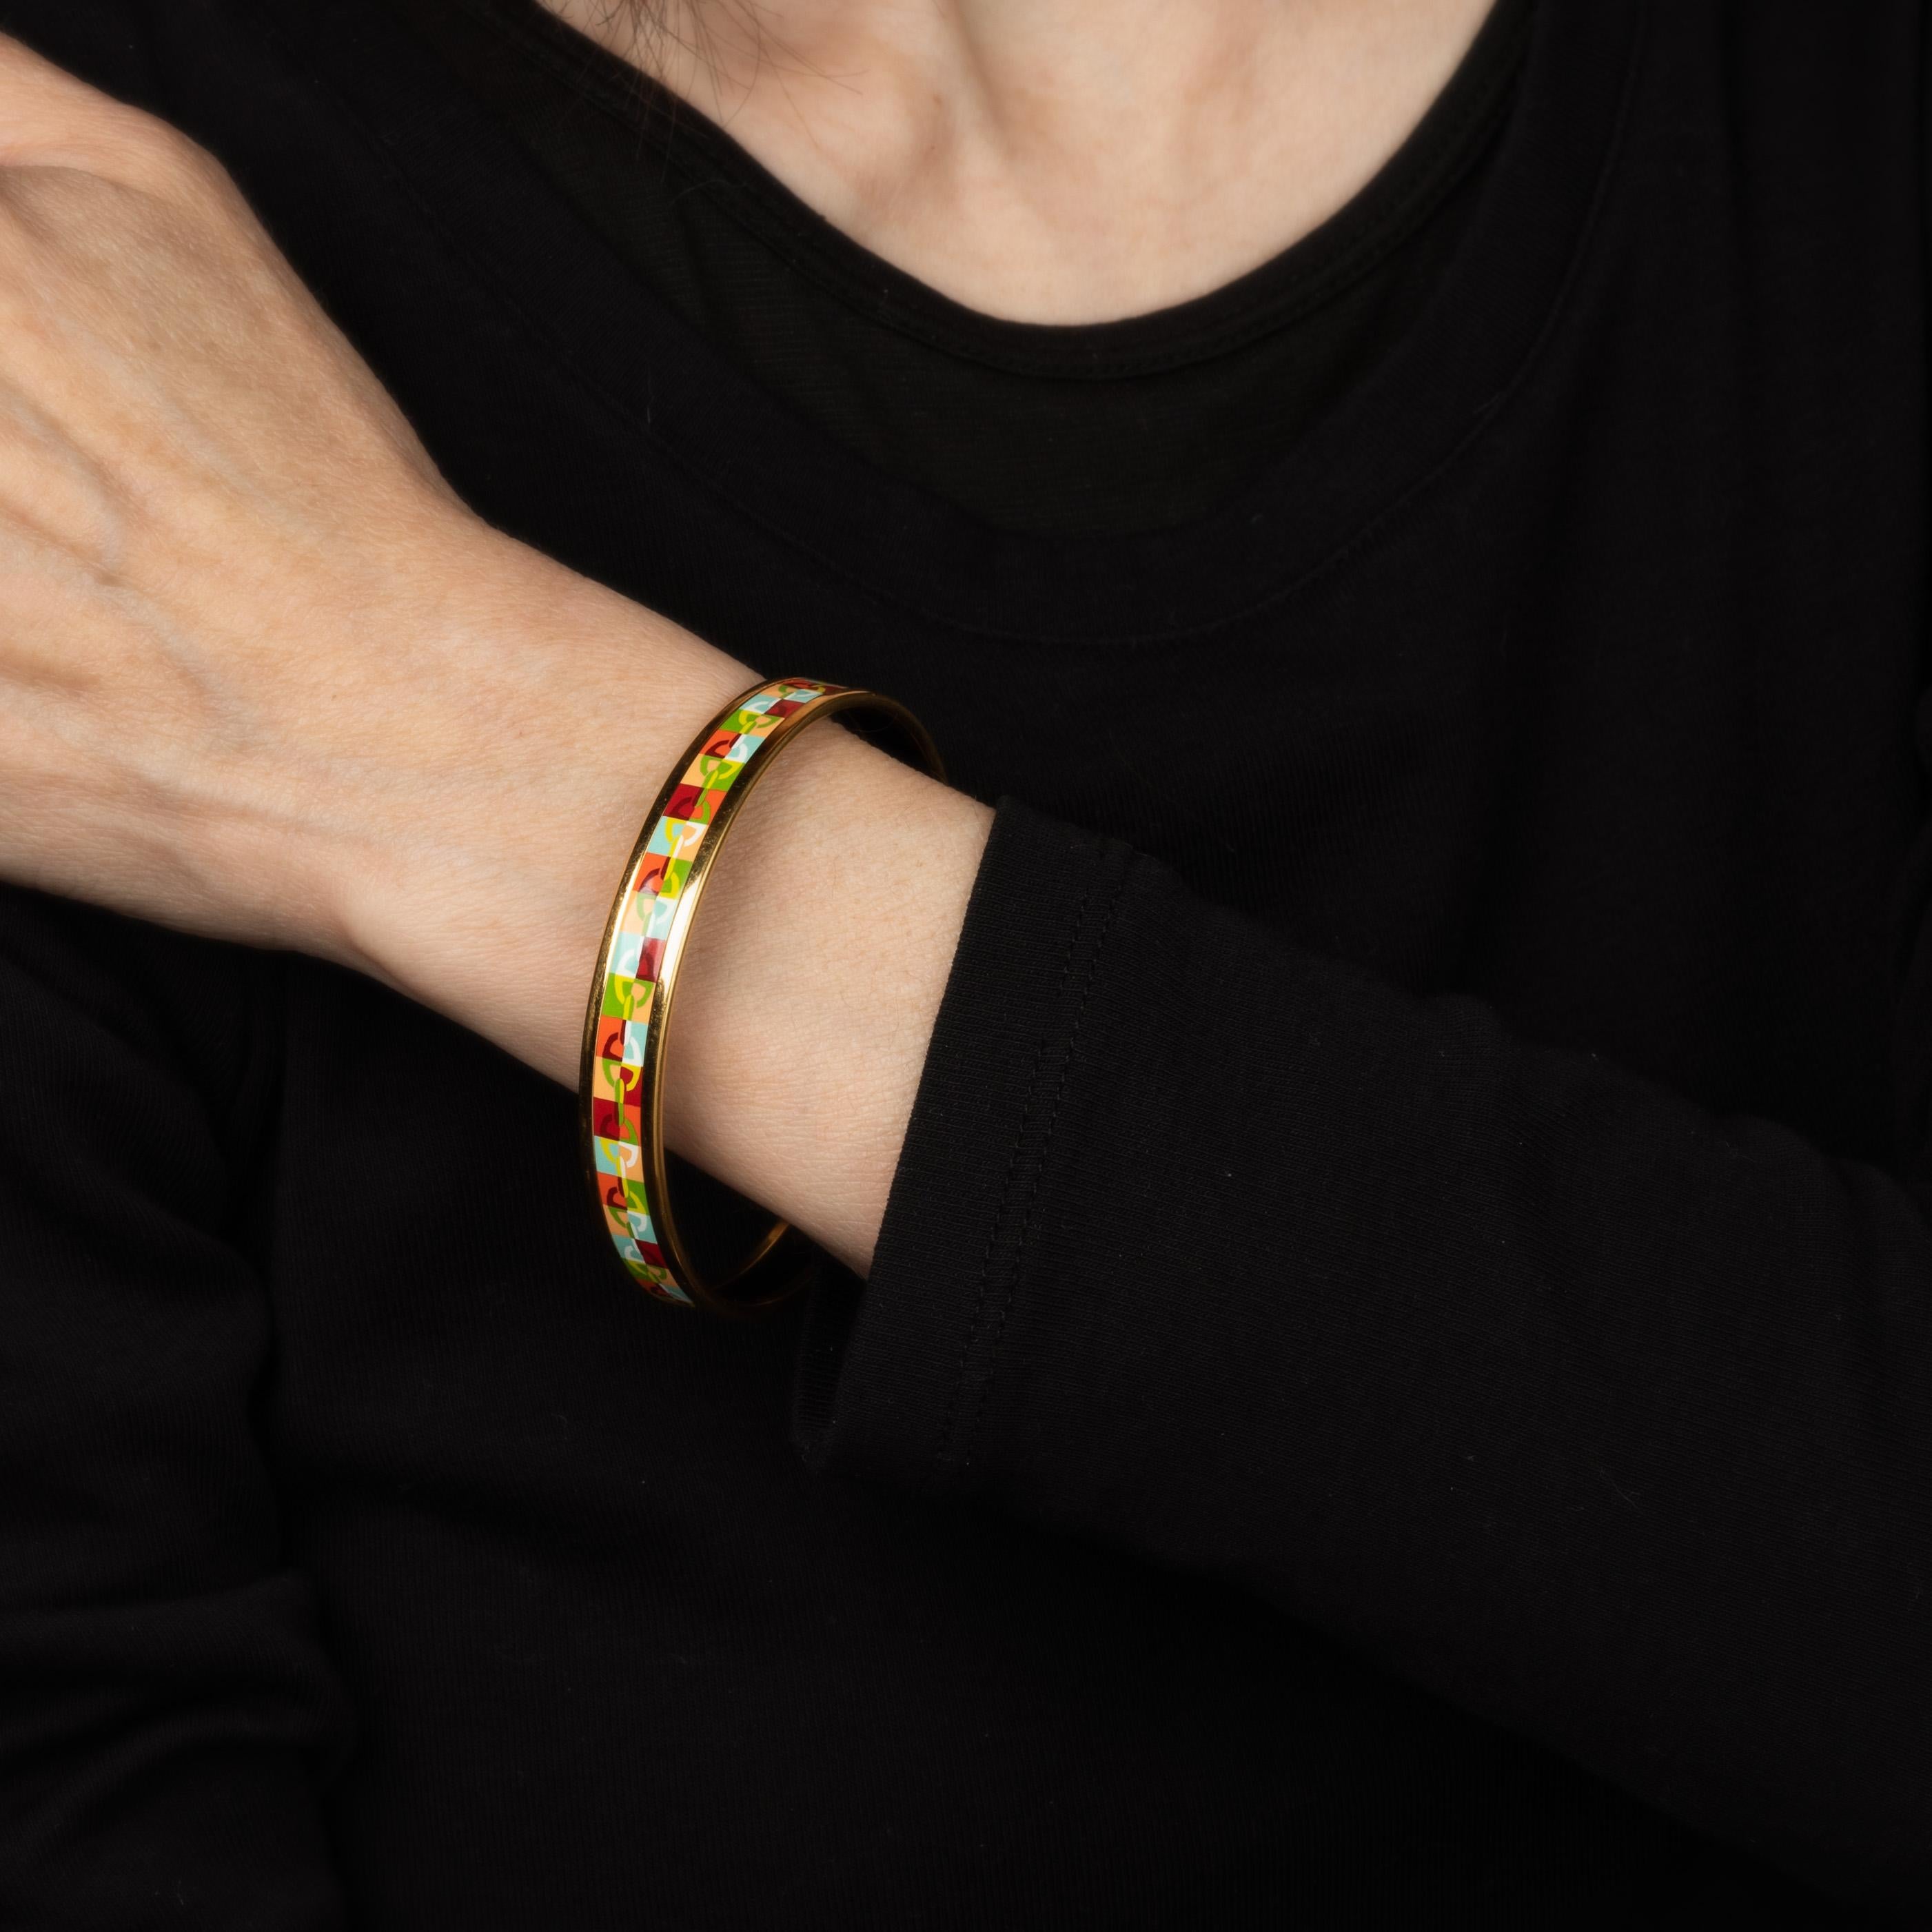 Vue d'ensemble :

Bracelet d'occasion Hermes en émail avec un motif de liens multicolores. 

Le bracelet étroit de 0,35